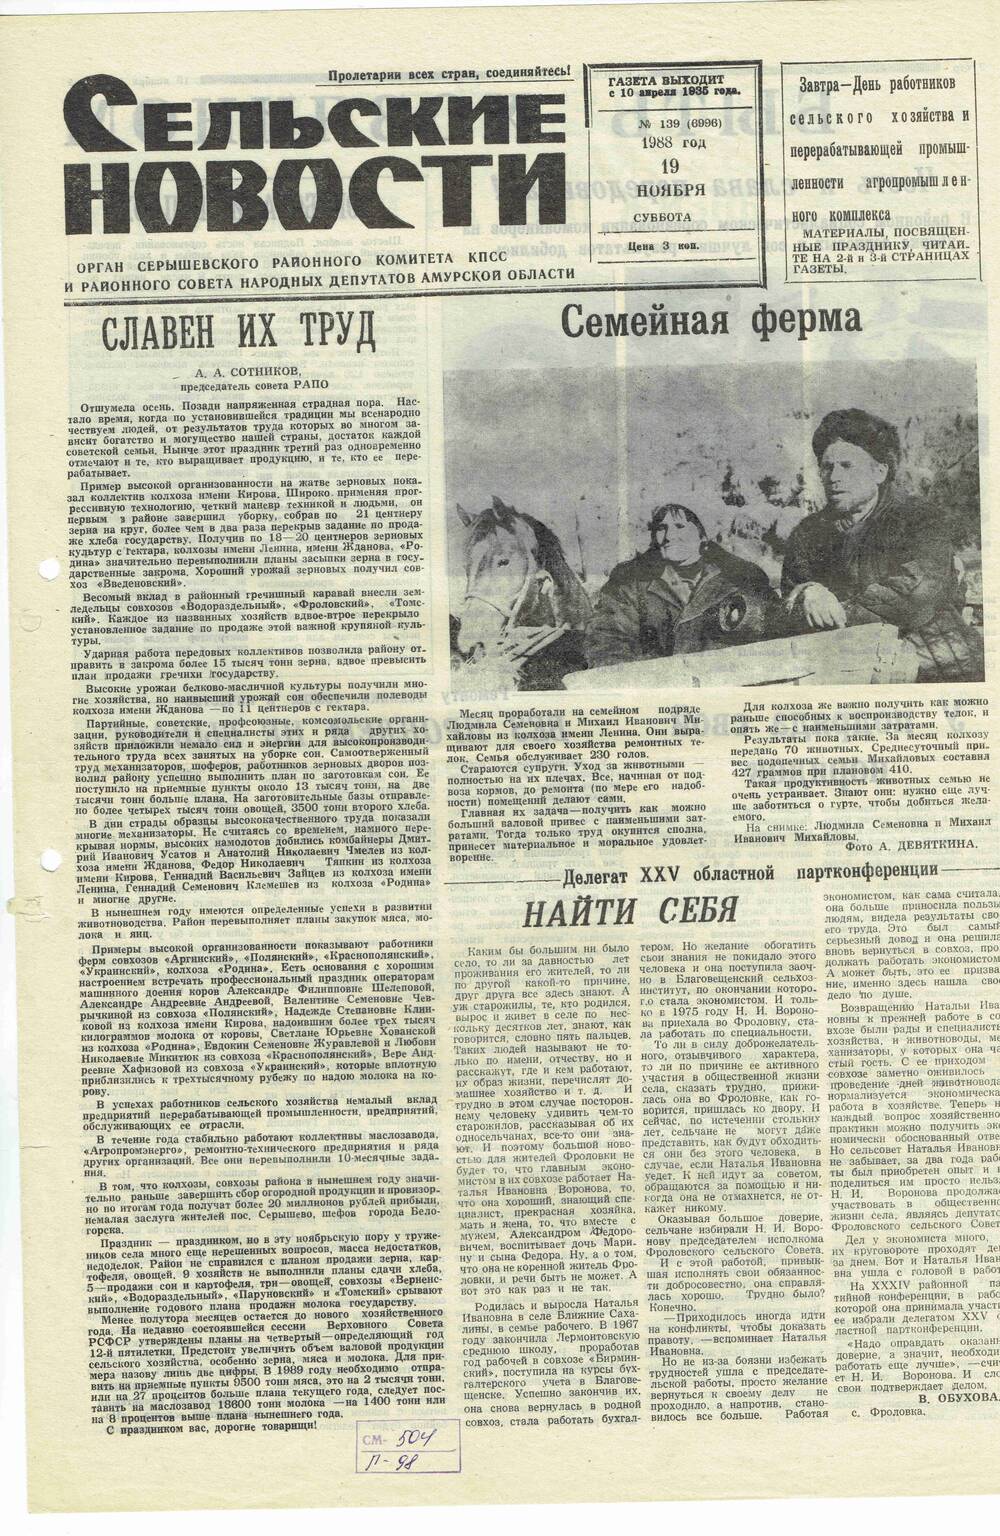 Газета «Сельские новости» №139 19.11.1988 года выпуска.